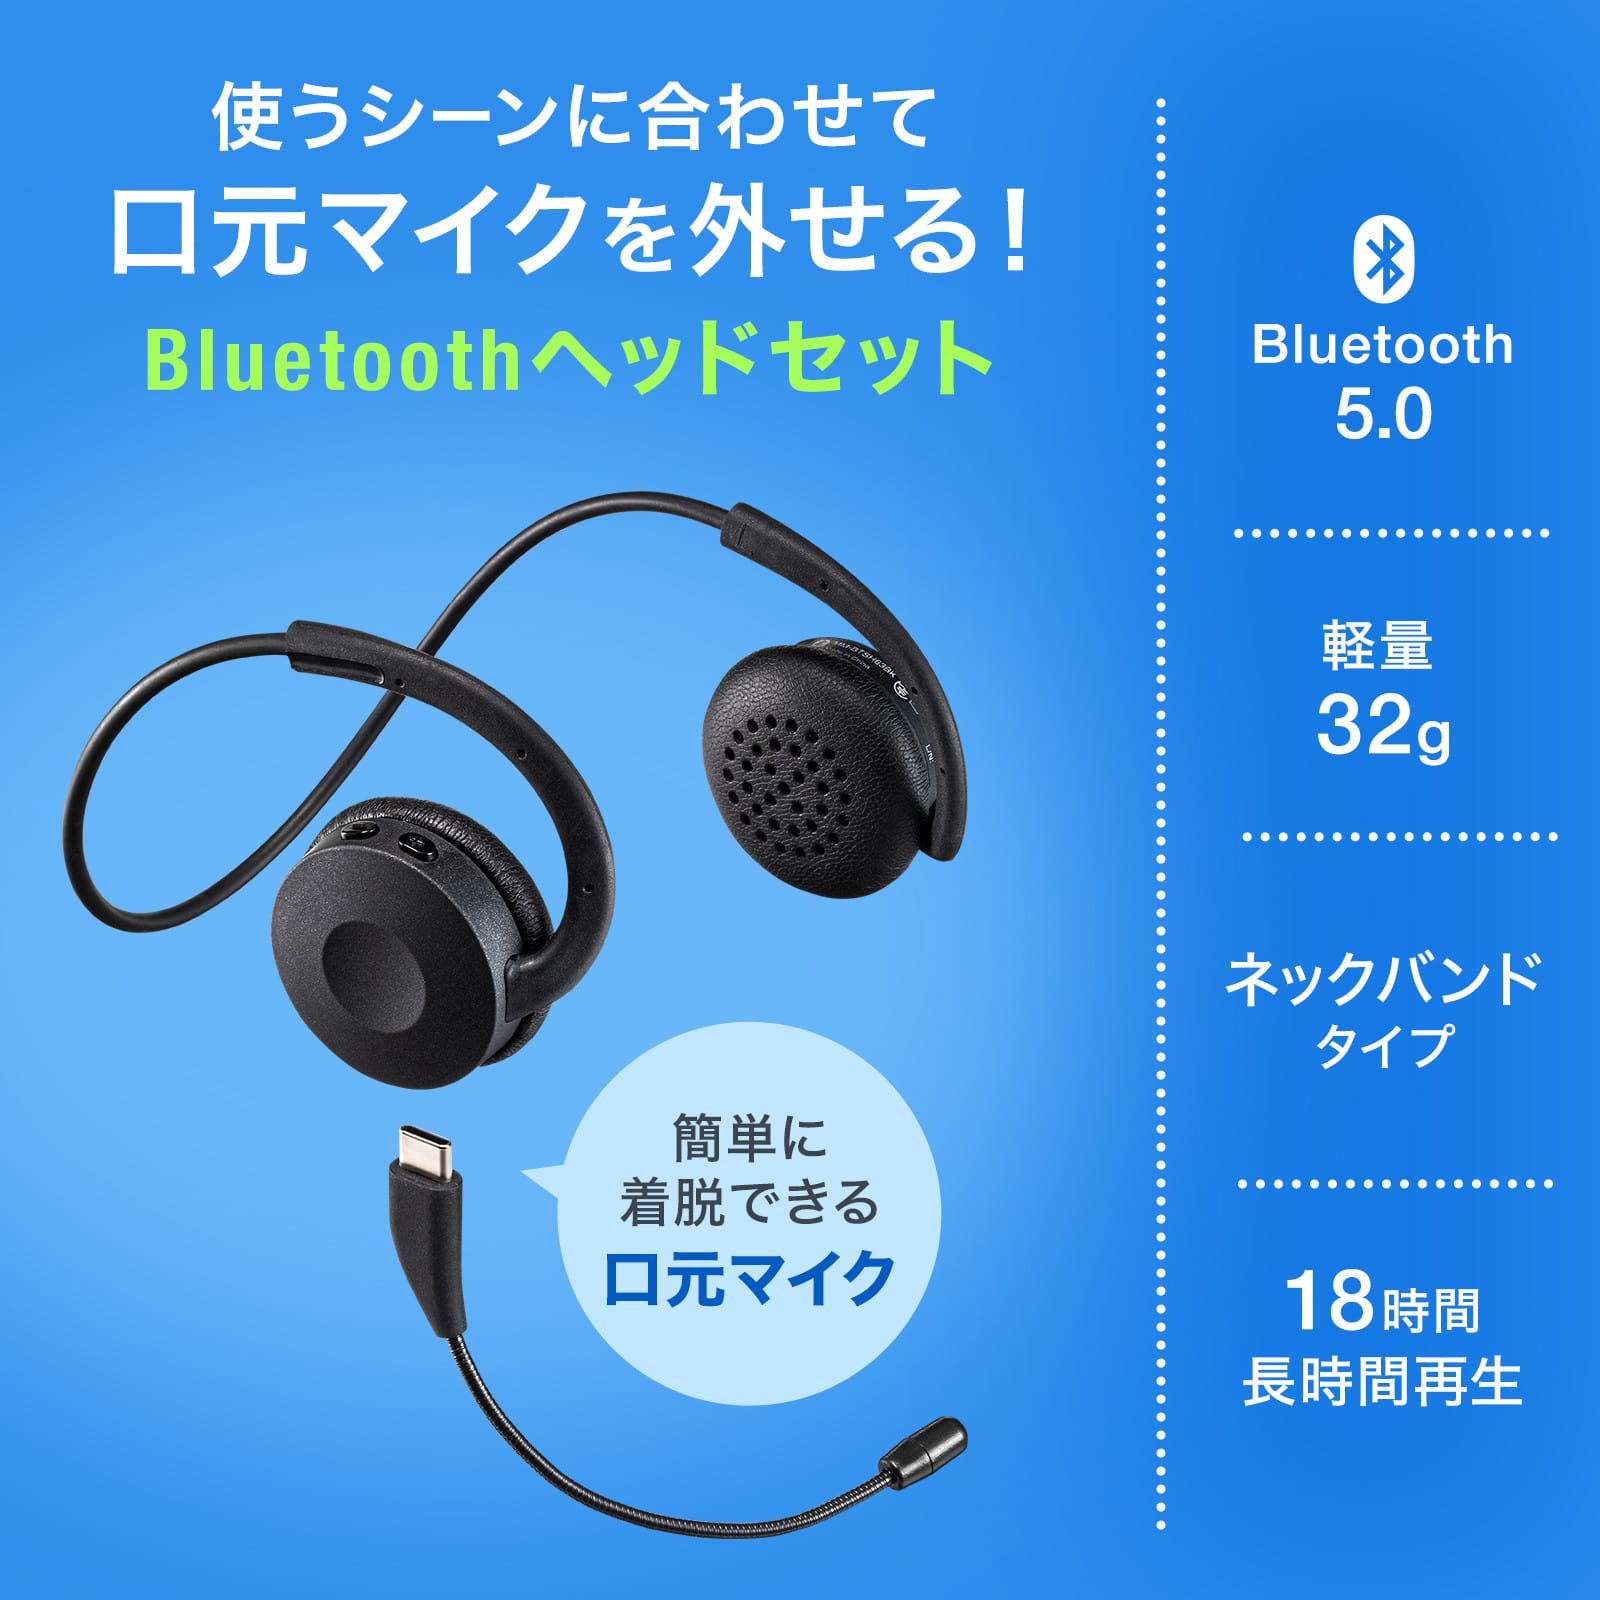 サンワサプライ、ネックバンド型Bluetoothヘッドセットを発売